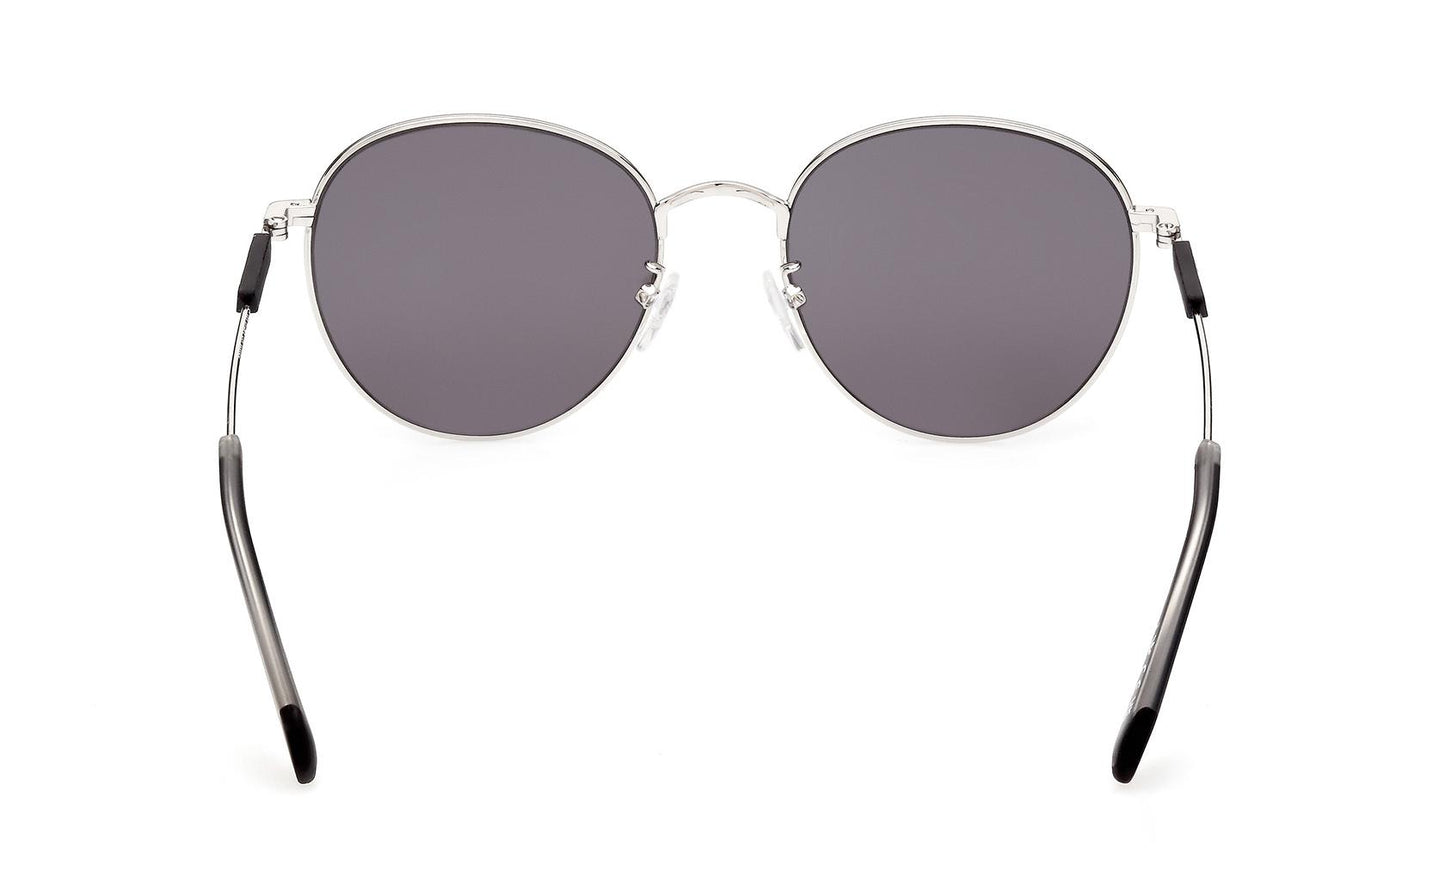 Adidas Originals Sunglasses OR0072 16C